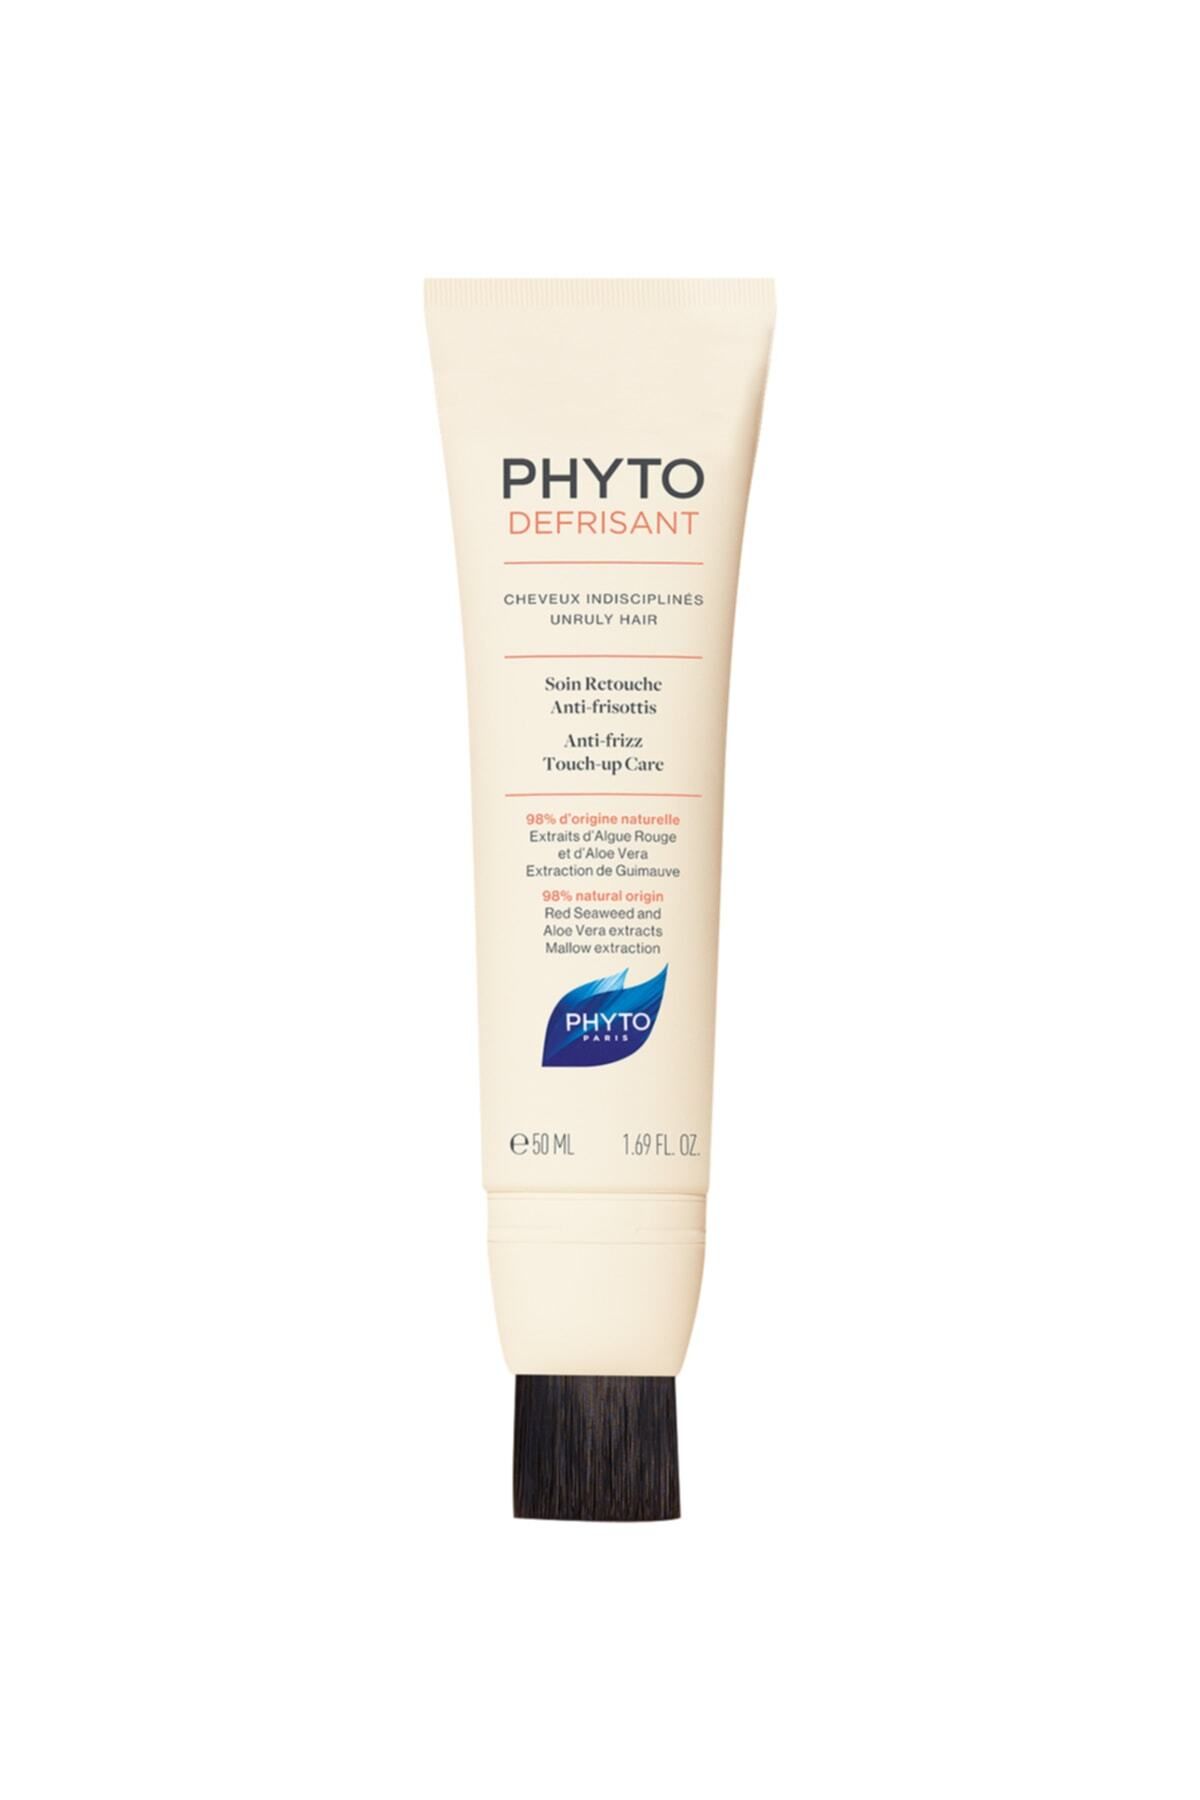 Phyto Defrisant Retouch Cream Asi Ve Kabarık Saçlar Için Elektriklenme Karşıtı Bakım Kremi